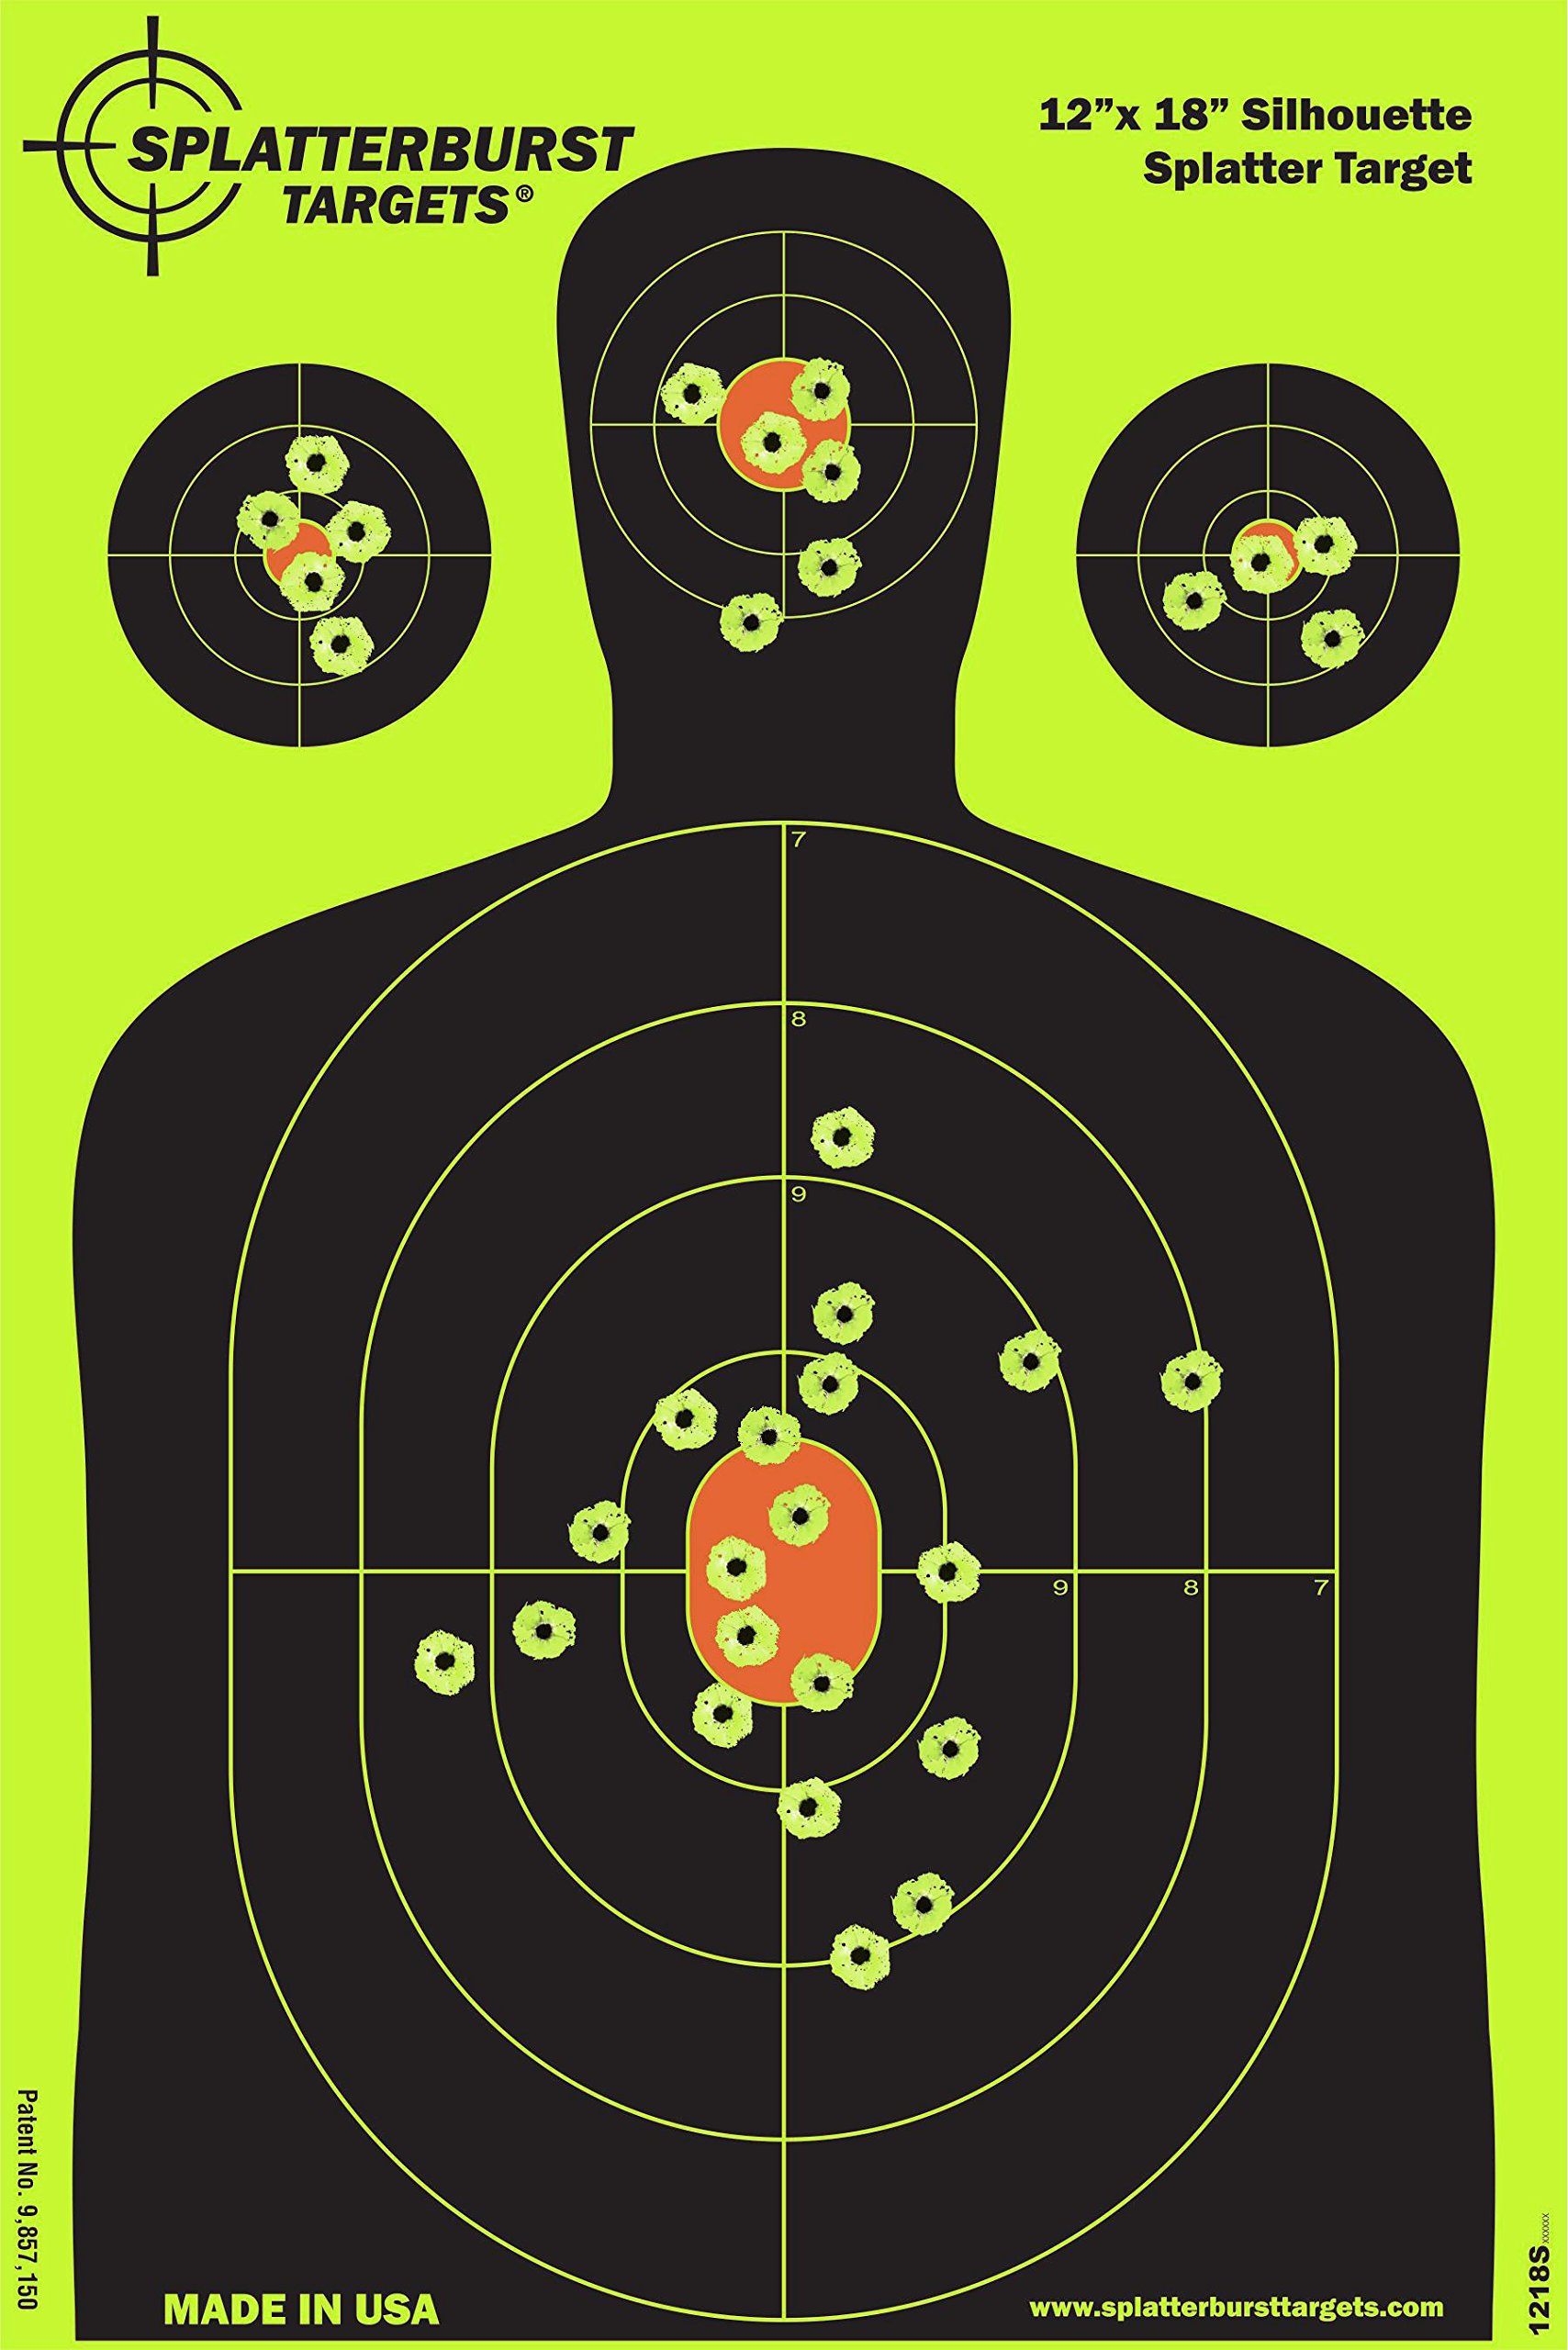 Shooting range target